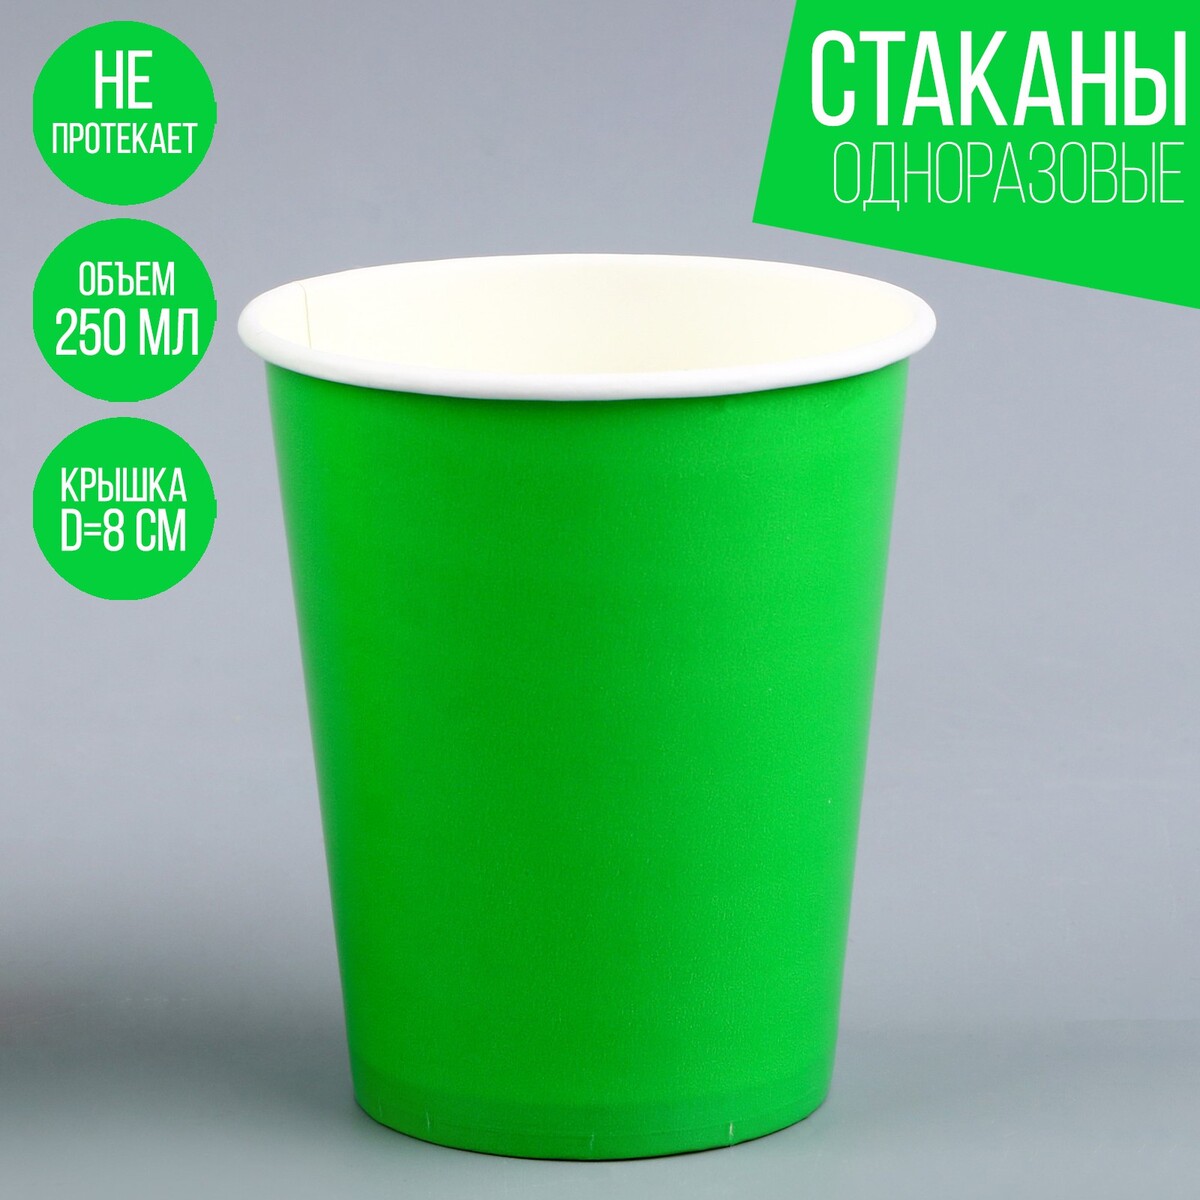 Стакан одноразовый бумажный однотонный, цвет зеленый, объем 250 мл, набор 10 штук стакан 445 мл стекло pasabahce энжой зеленый 520015slbgr